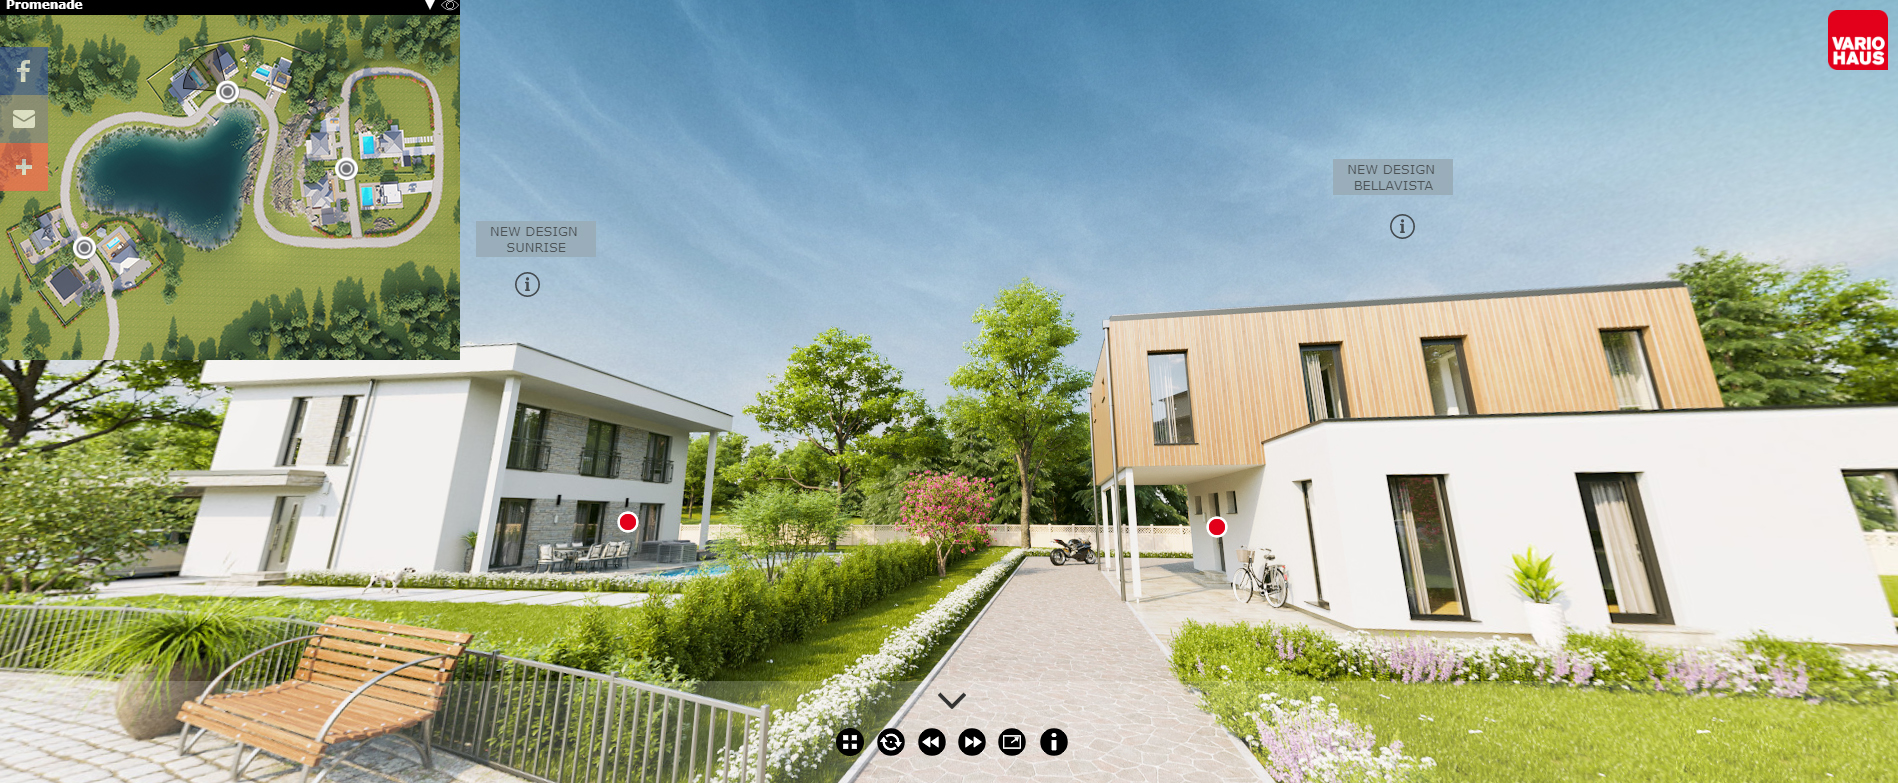 Vario Haus presenta il primo parco 3D di case in legno thumbnail